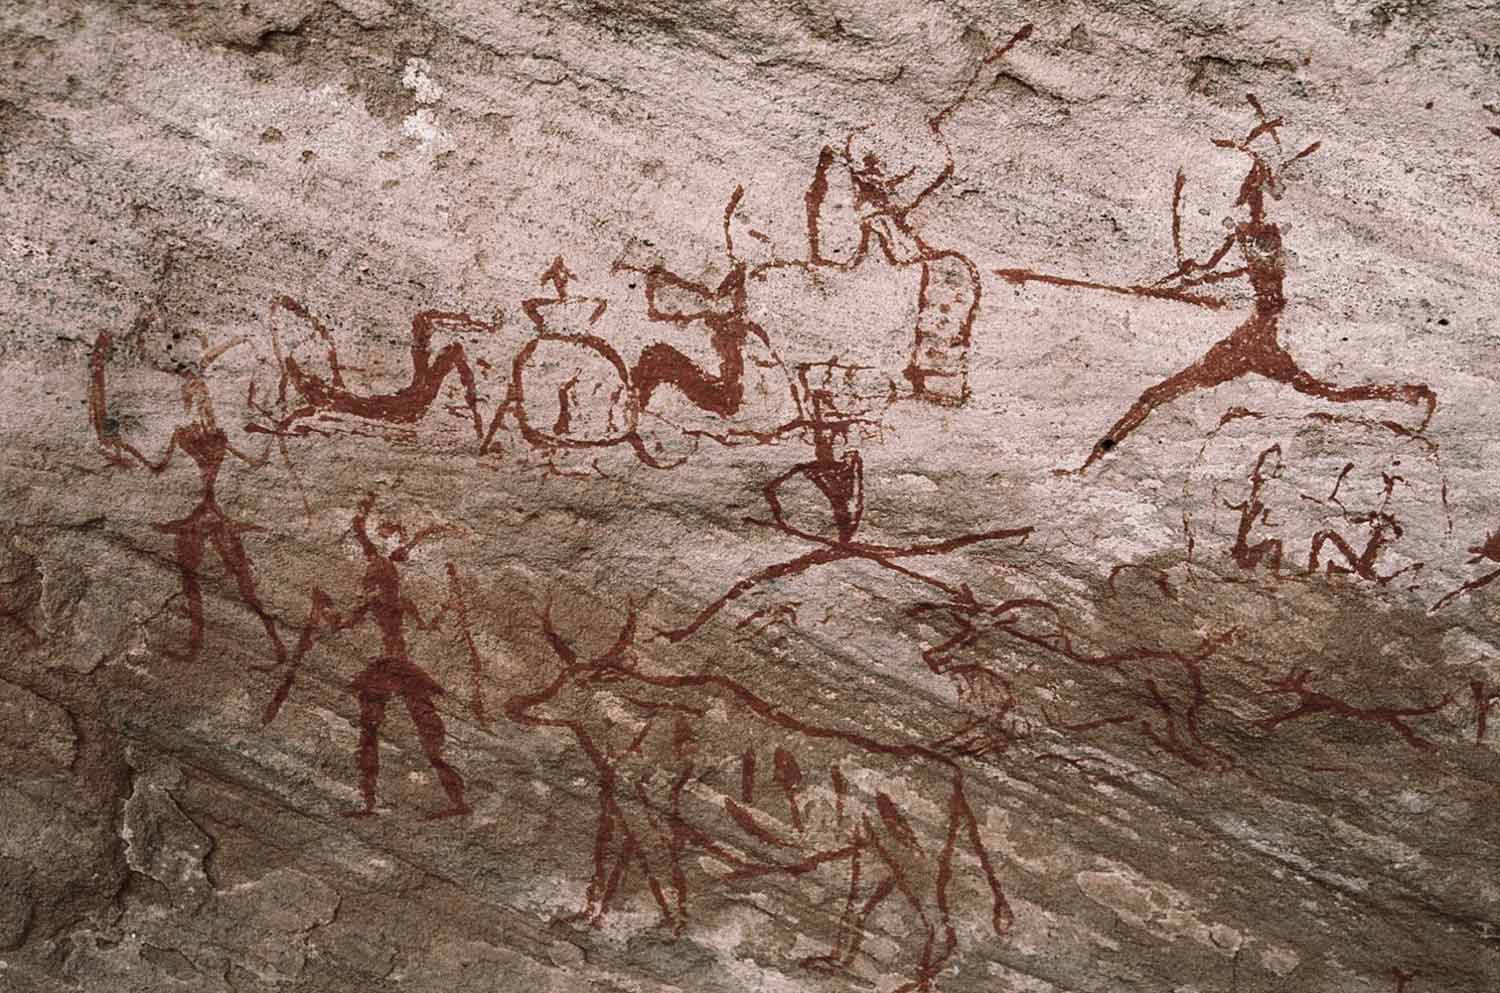 Höhlenmalerei von einer Survival-Jagdszene zeigt eindeutig die lange Geschichte des heutigen Survival.